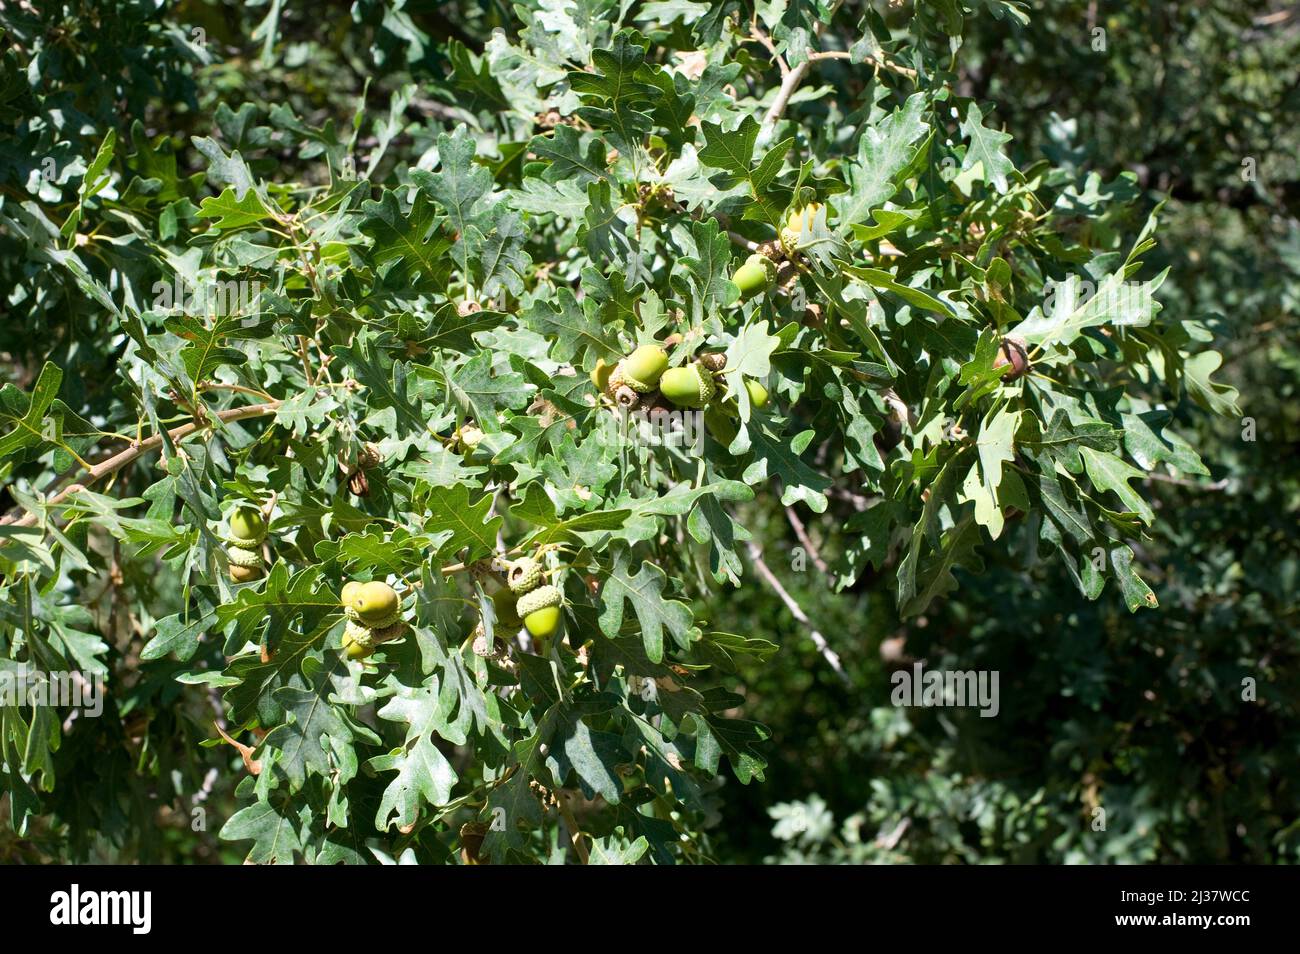 Die Gambeleiche (Quercus gambelii) ist ein kleiner Laubbaum, der im zentralen Westen der USA beheimatet ist. Früchte (Eicheln) und Blätter Detail. Dieses Foto wurde aufgenommen in Stockfoto